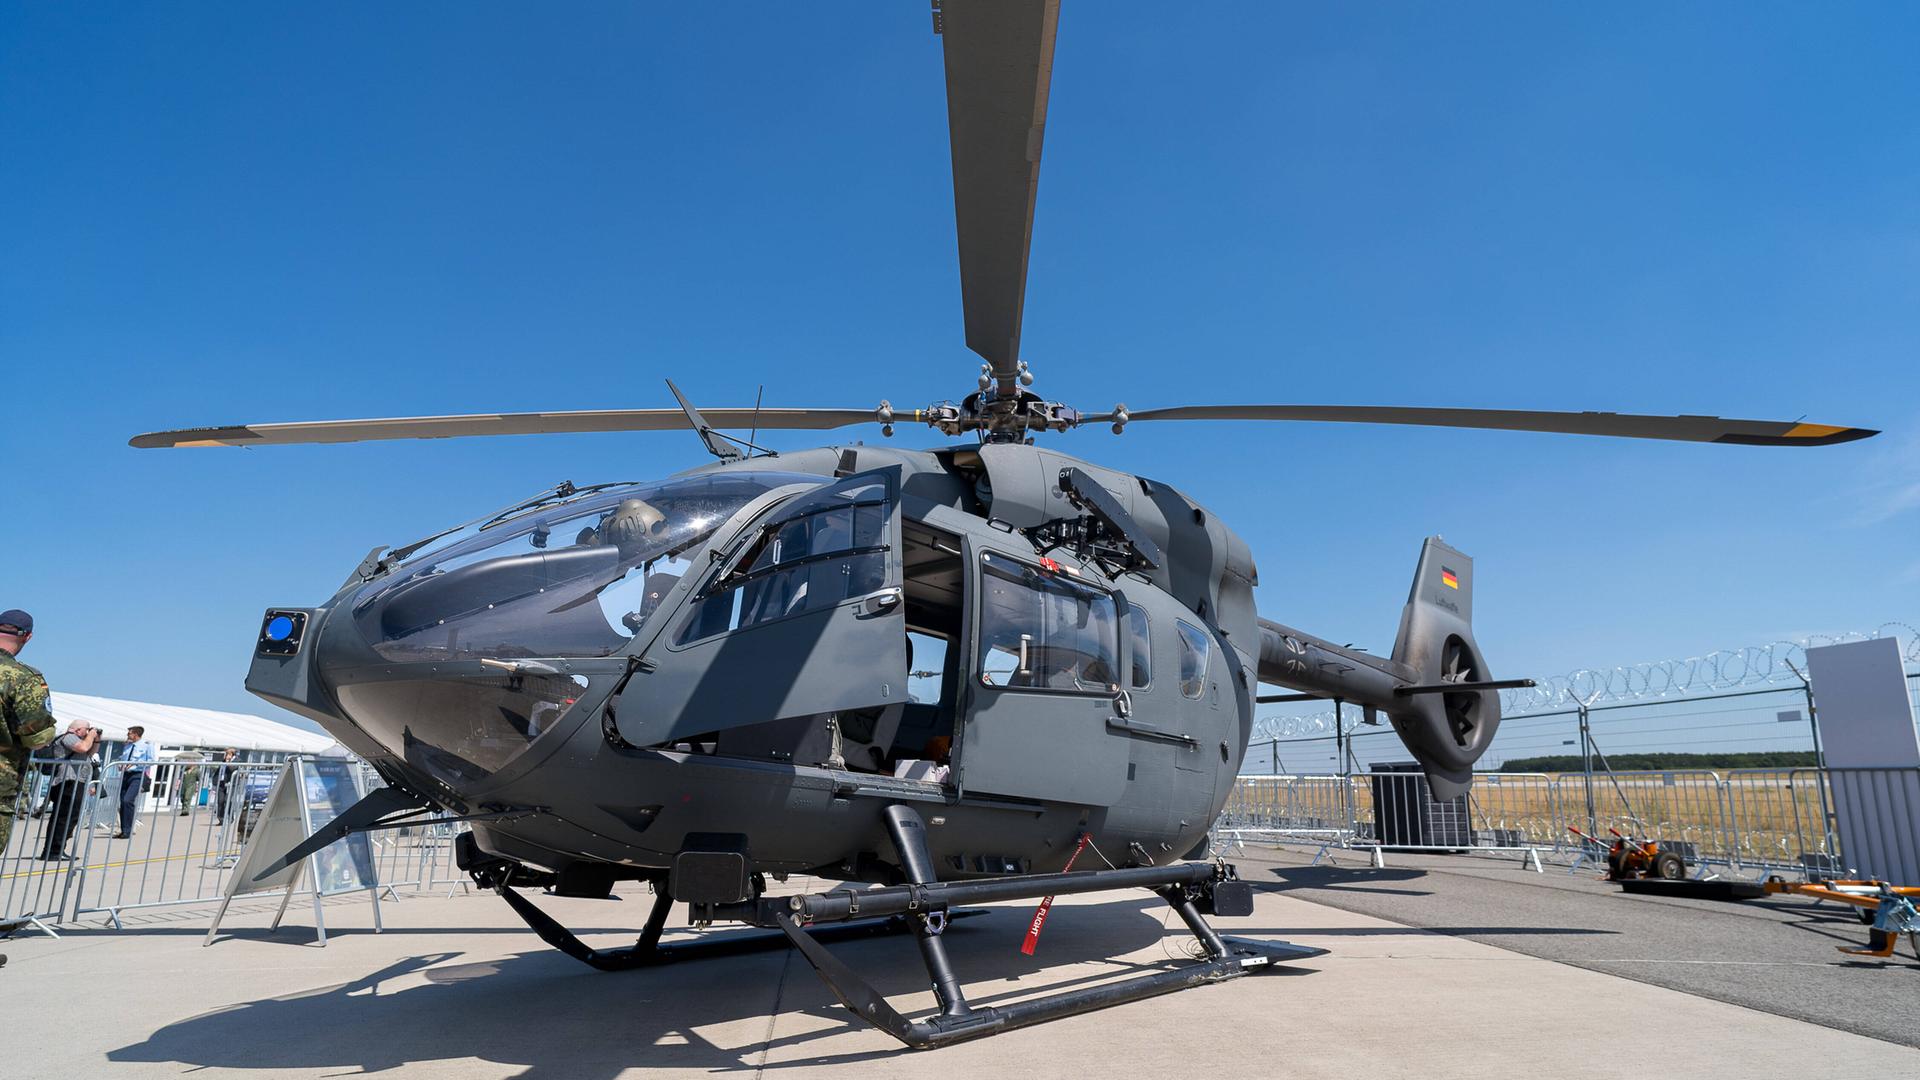 Ein Helikopter vom Typ H-145M des Herstellers Airbus